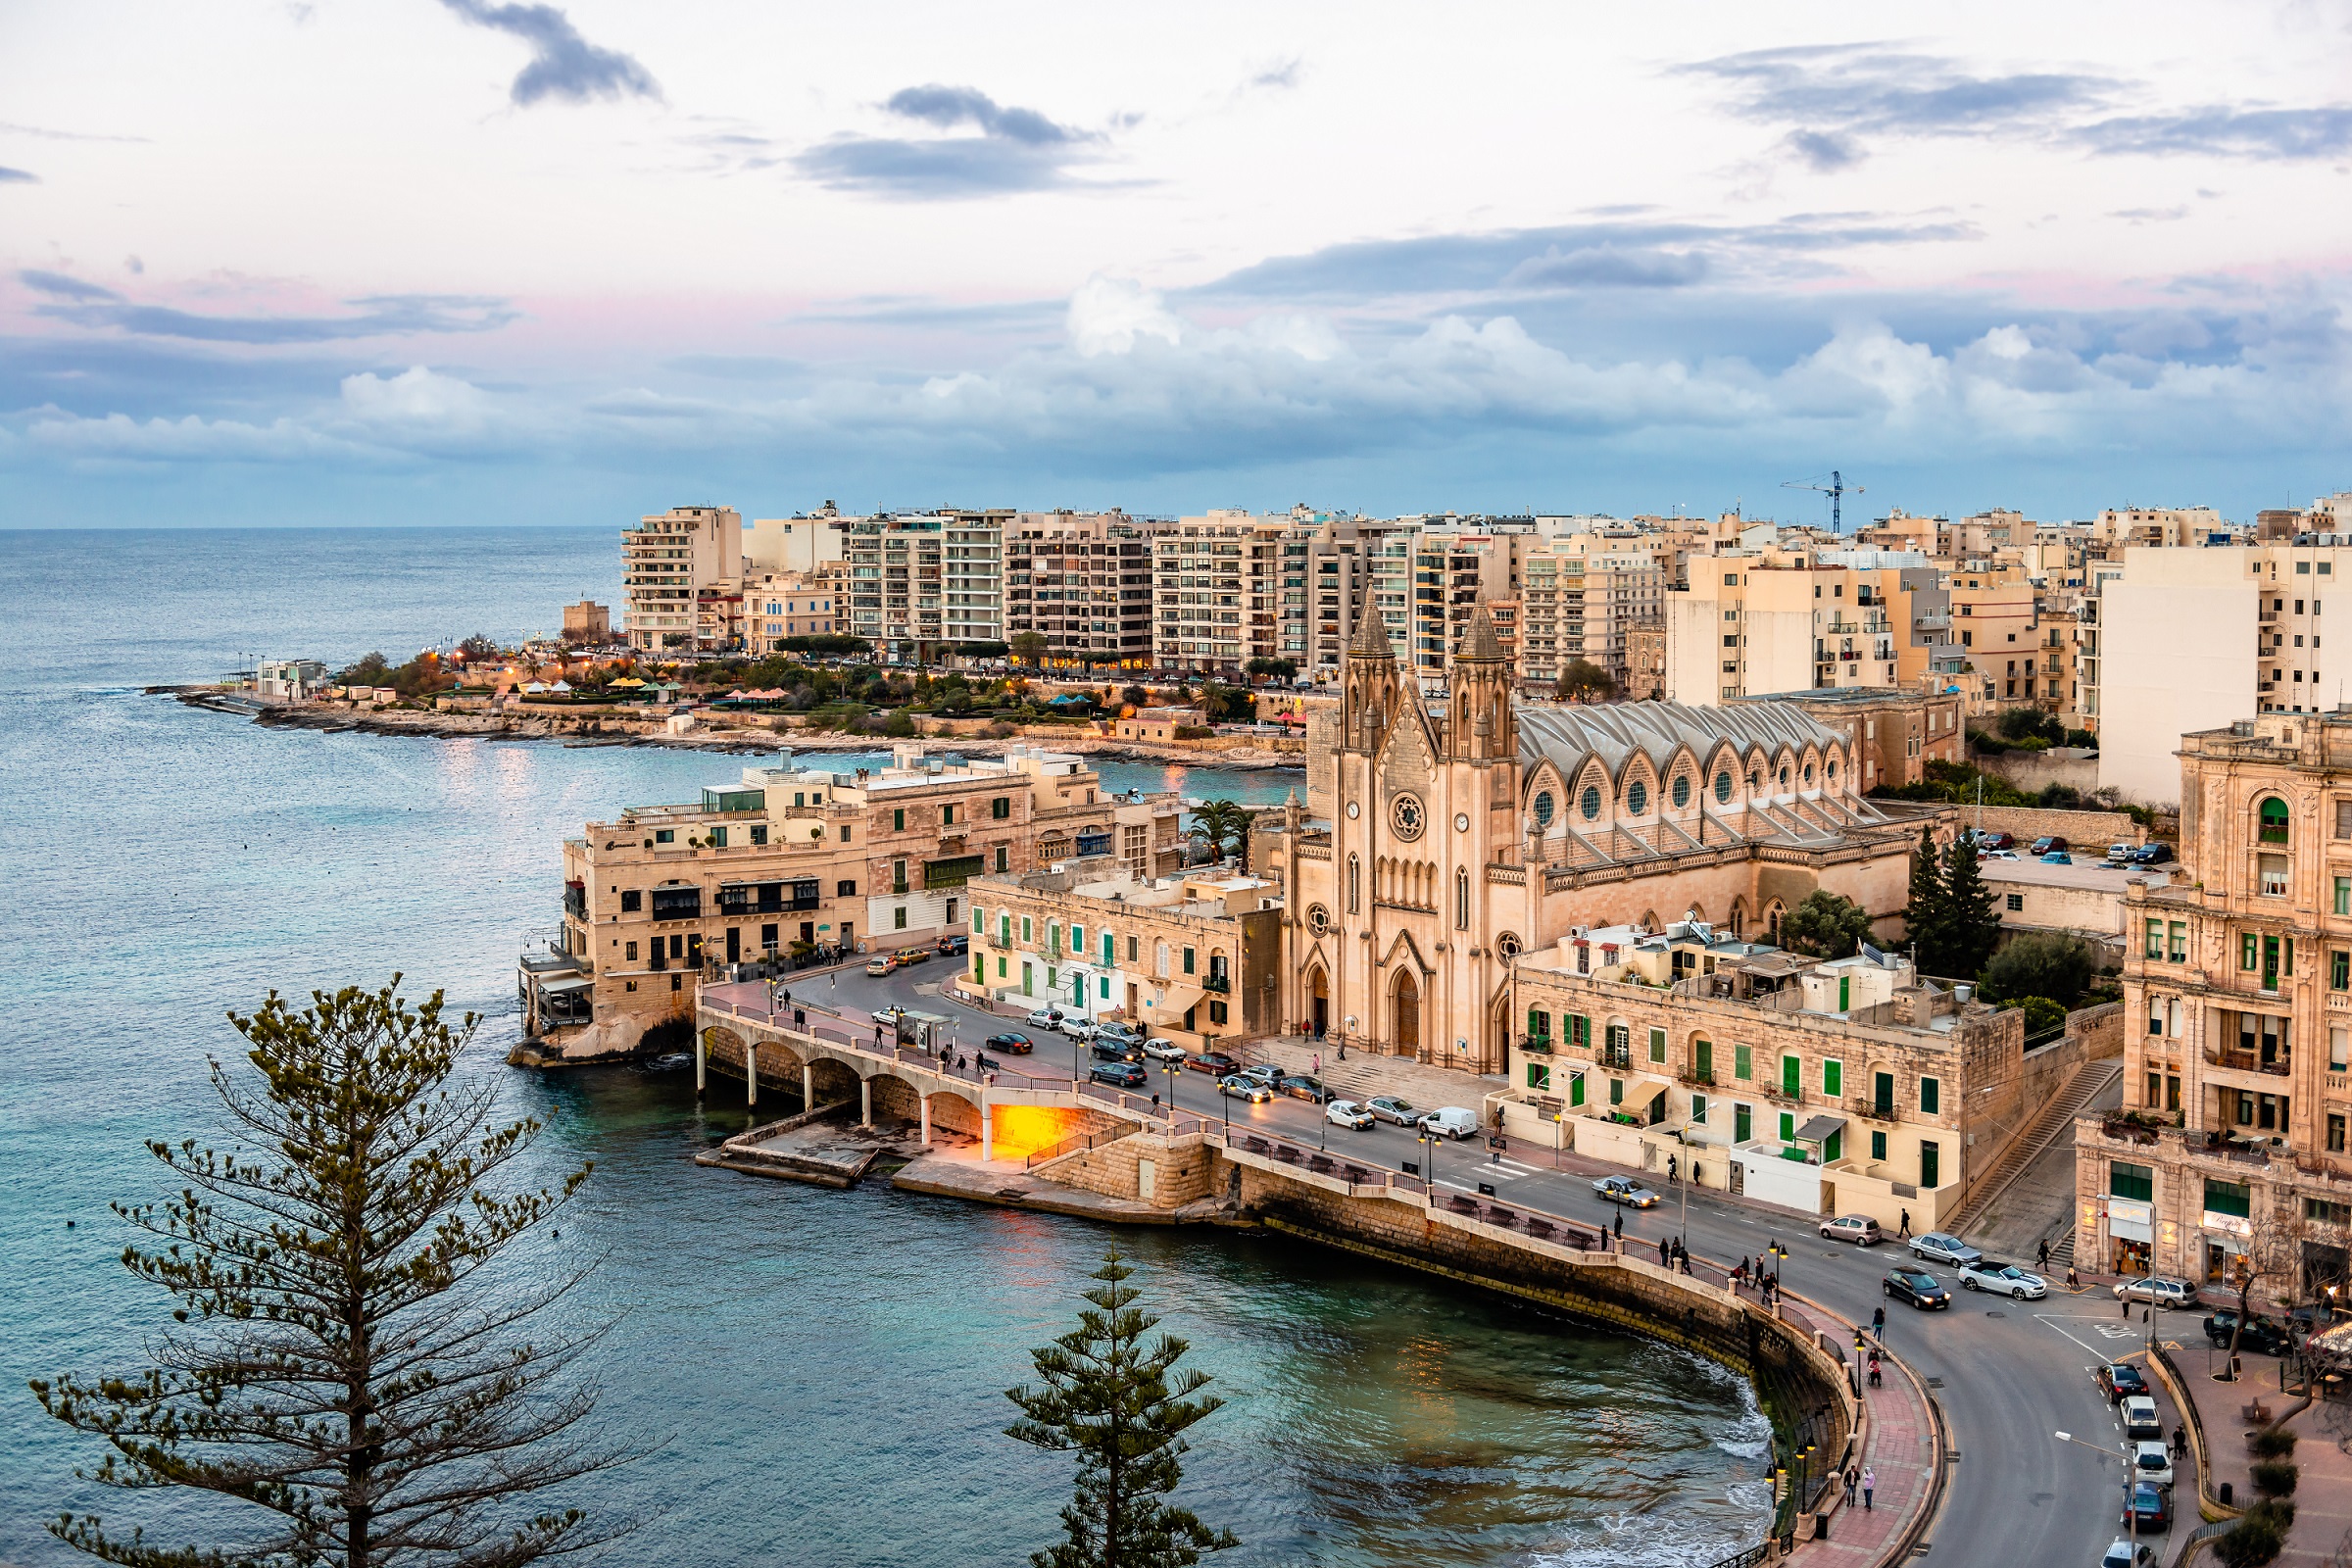 St. Julian's, Málta - a szigeteket az európaiaknak nem kell nagyon bemutatni, fantasztikus hely Málta. Mediterrán klímája, rengeteg természeti szépsége és épített látnivalója mellett vonzóvá teszi az is, hogy az angol az egyik hivatalos nyelv az országban. Az említett város ráadásul nem mondható turistacélpontnak, pedig csak tíz perces autóútra fekszik a fővárostól, Vallettától